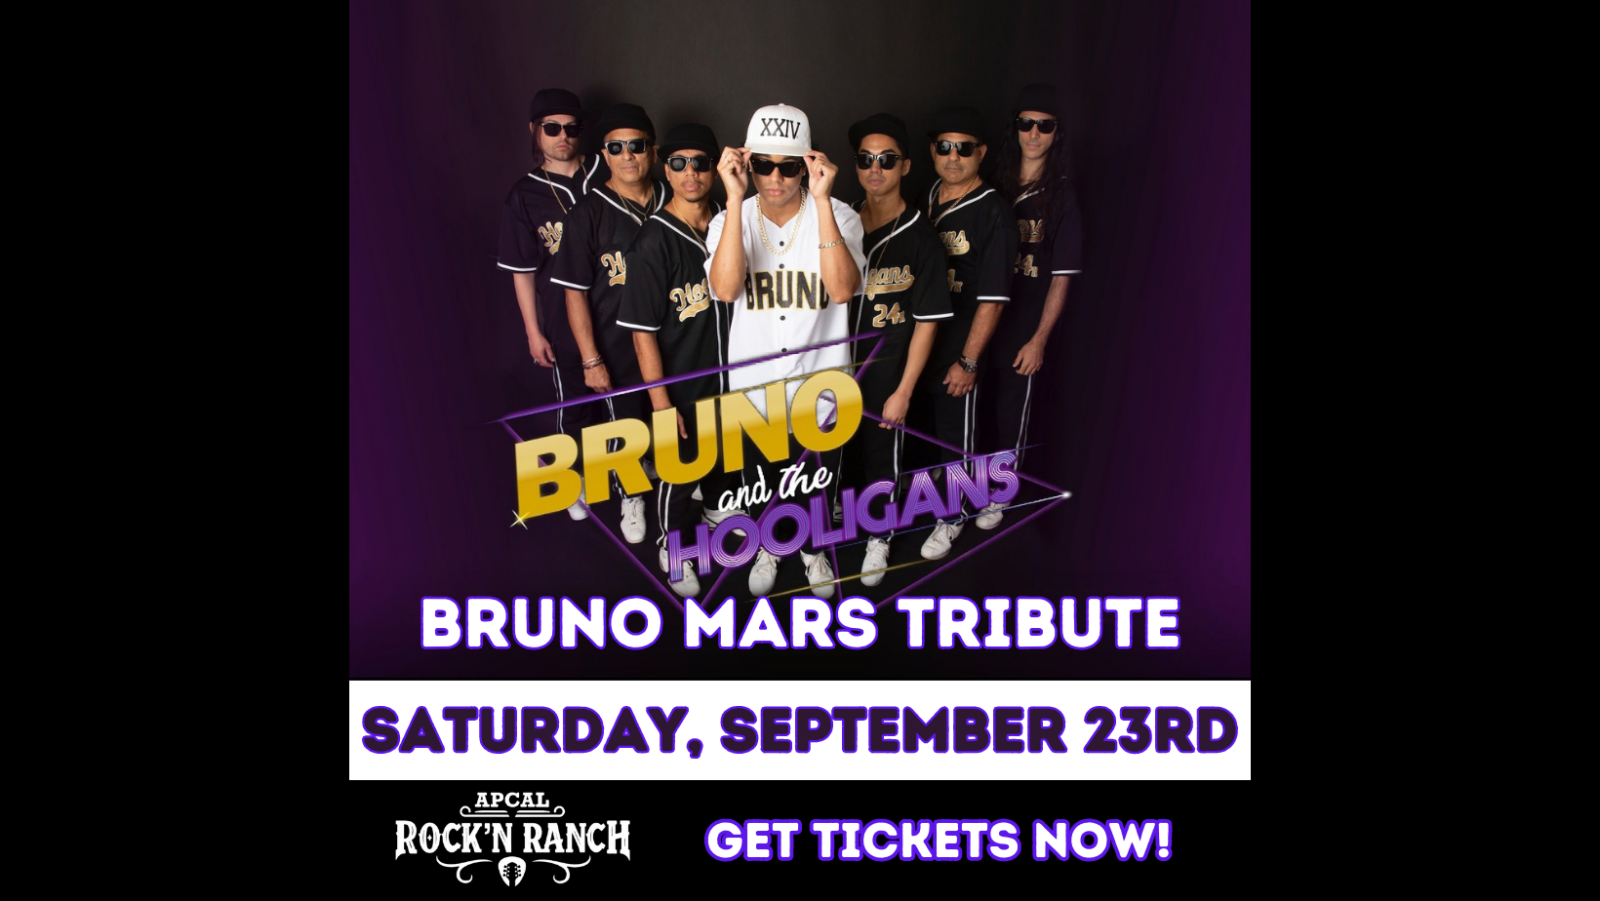 Bruno Mars Tribute - Saturday September 23rd, ApCal Rock'N Ranch